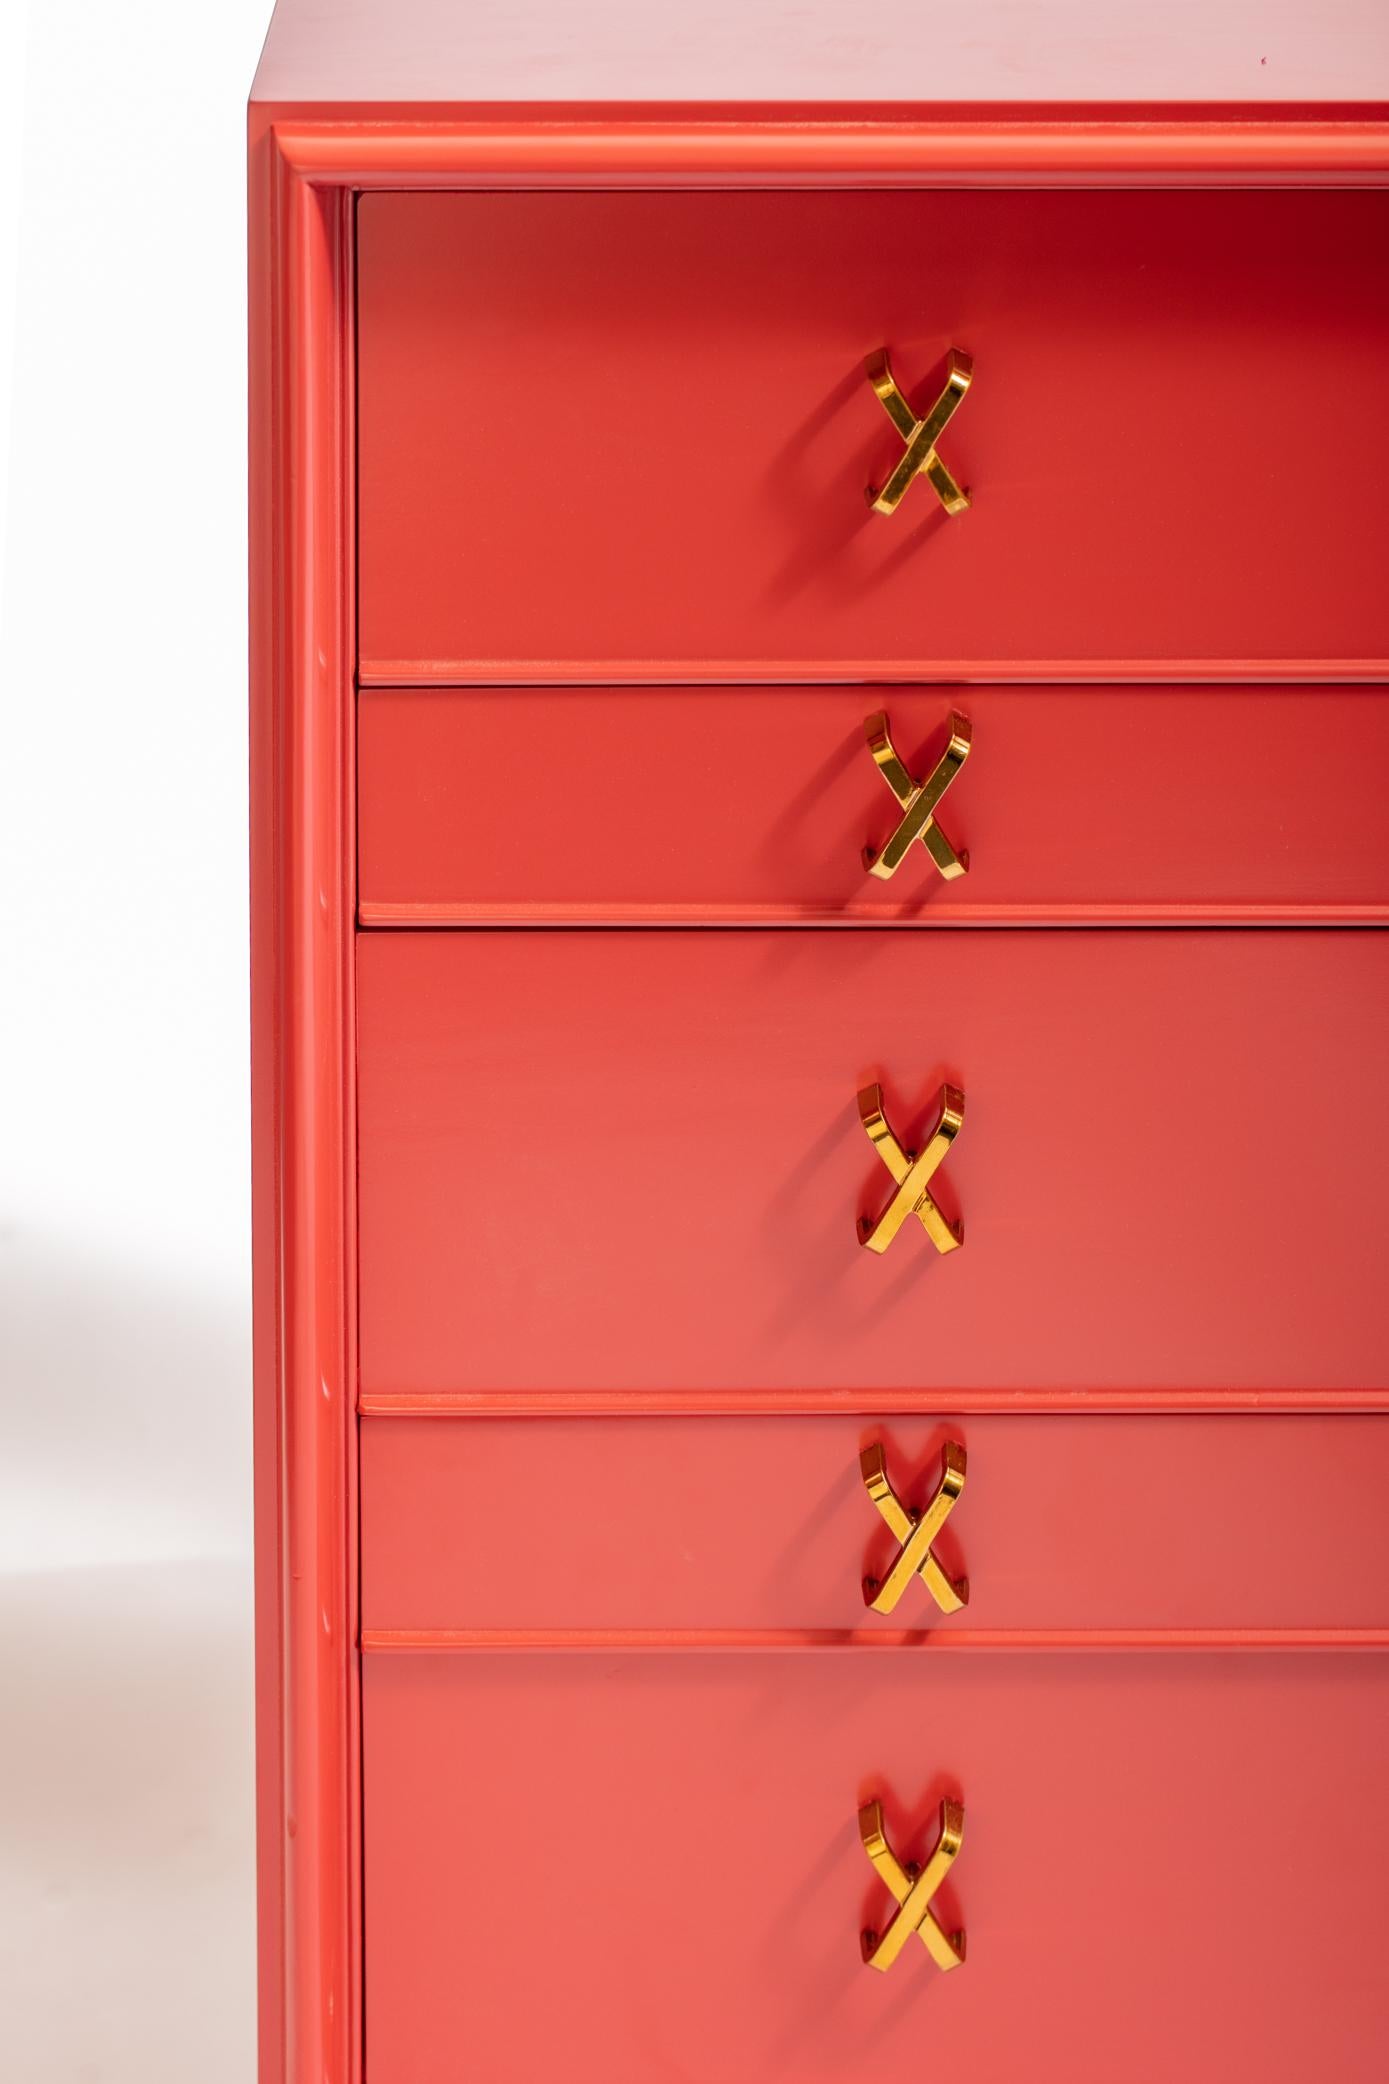 Die ikonische Kommode mit 10 Schubladen von Paul Frankl mit frisch polierten X-Zügen aus Messing, neu lackiert und in marokkanischem Rot aus Frankls Debonair-Kollektion für Johnson Furniture gezeigt.  Paar verfügbar. Bitte beachten Sie, dass der